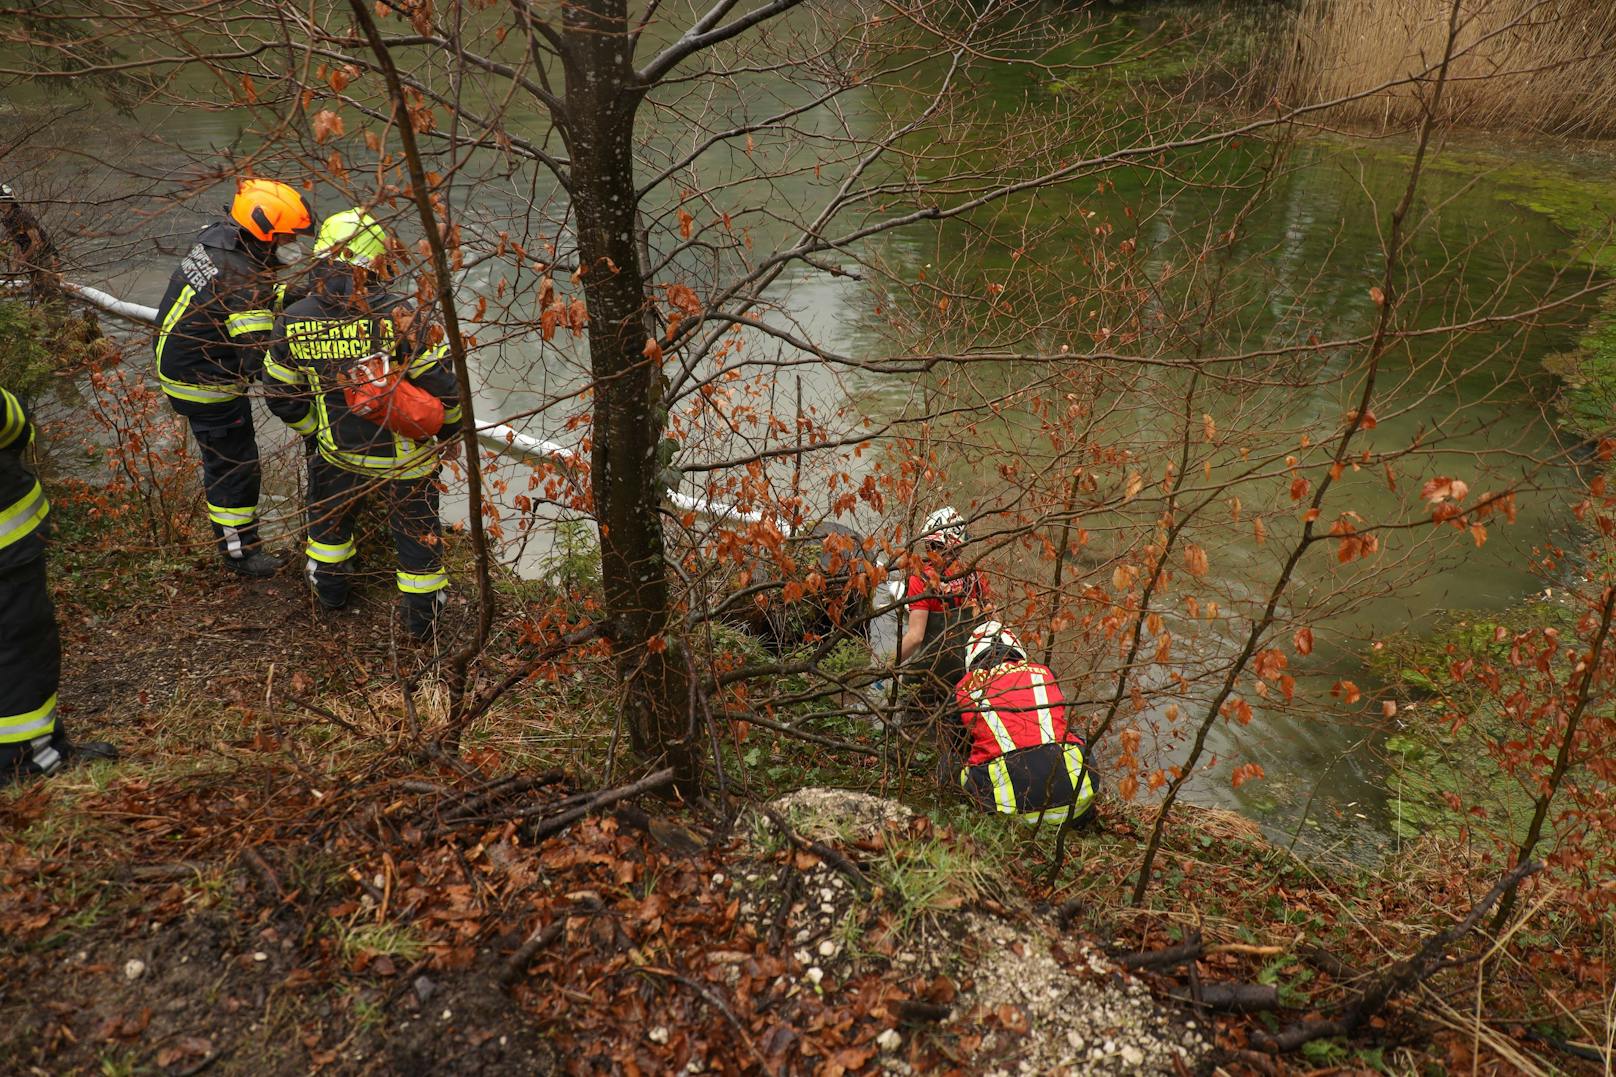 Bei Altmünster wurde eine Frau von der Feuerwehr gerettet.